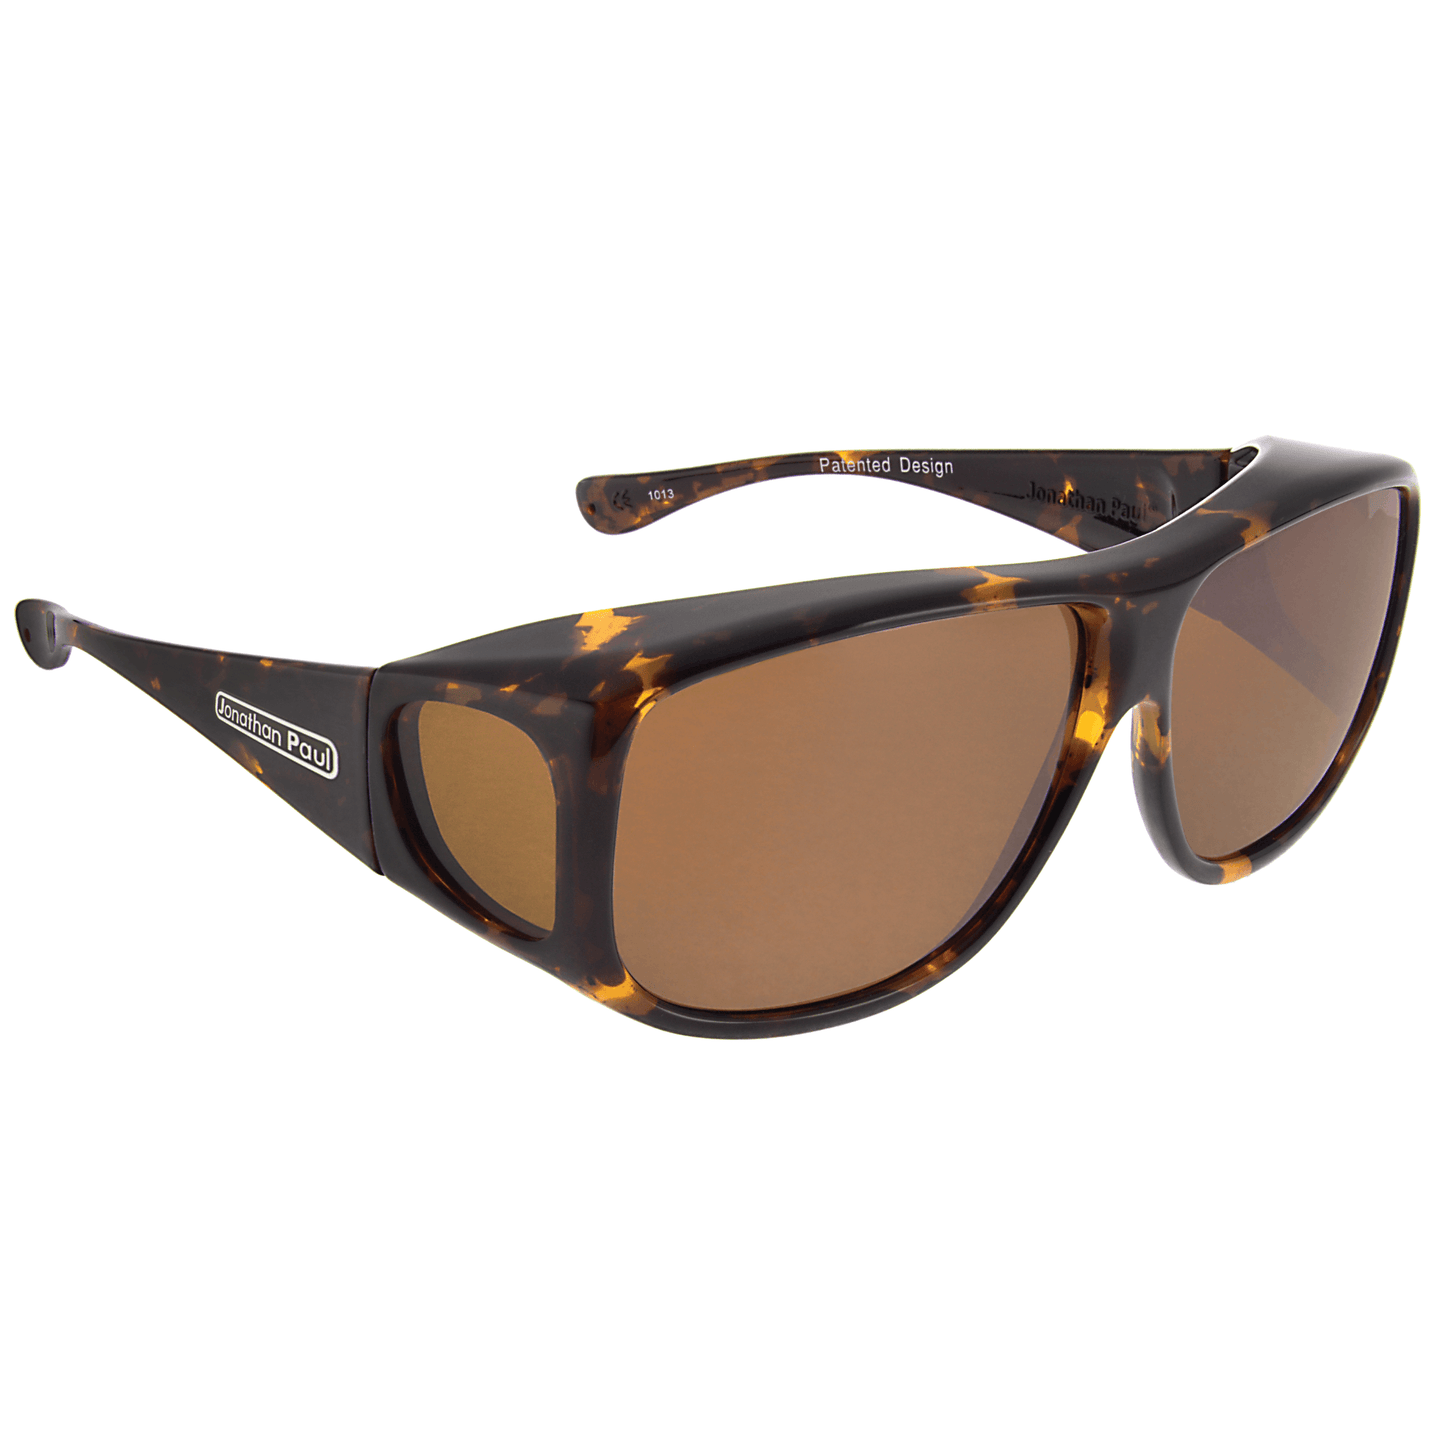 Fitover Sunglasses 'Aviator' Tortoiseshell - Amber Lens